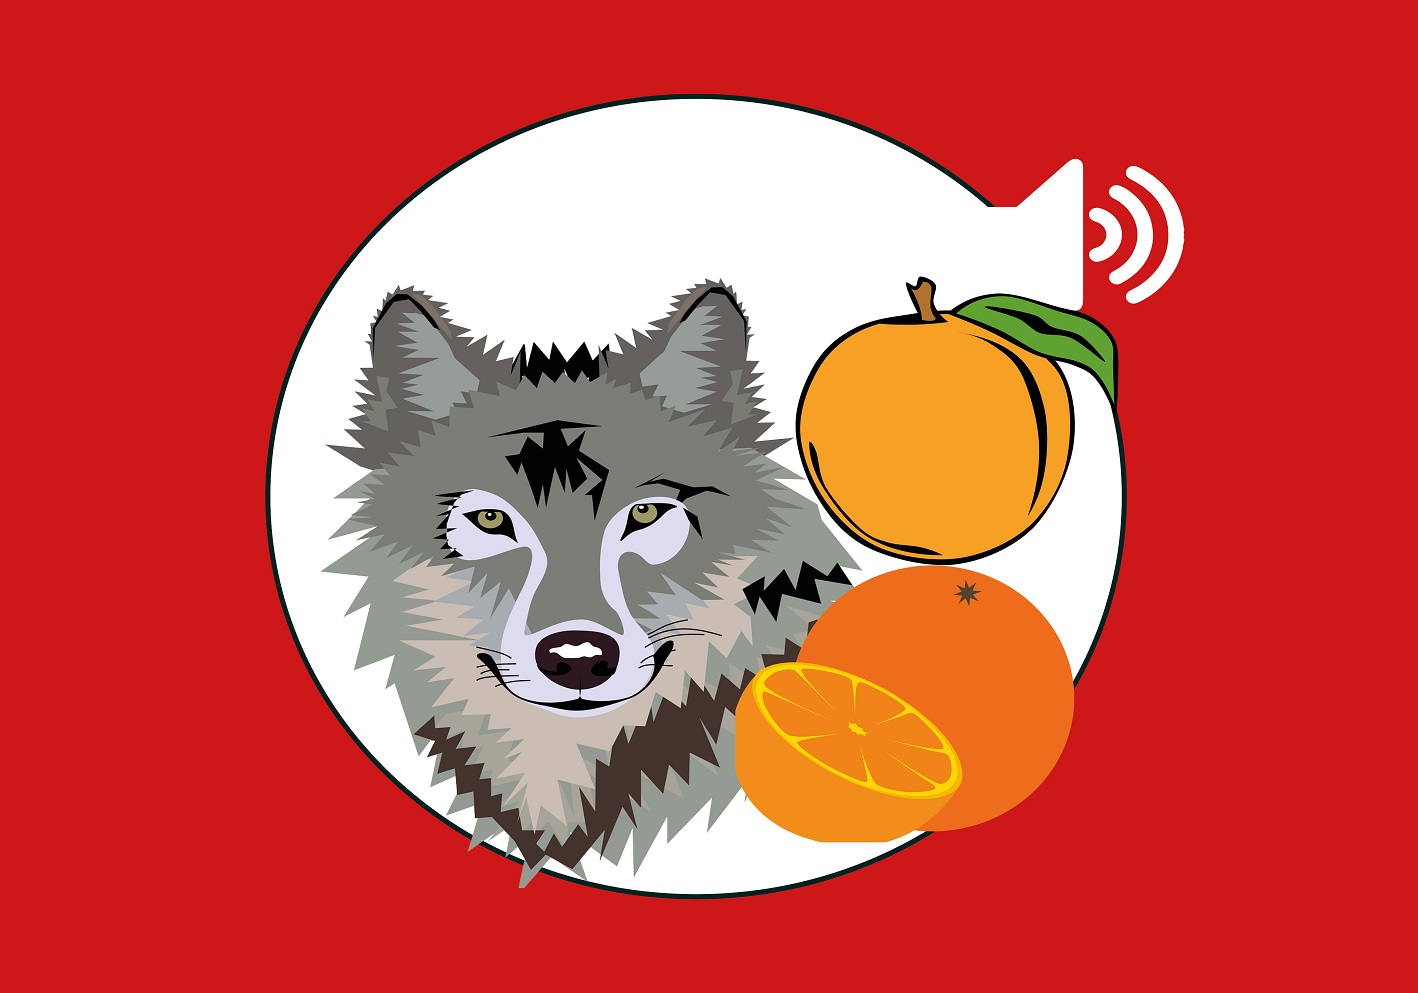 Le loup qui mangeait des oranges